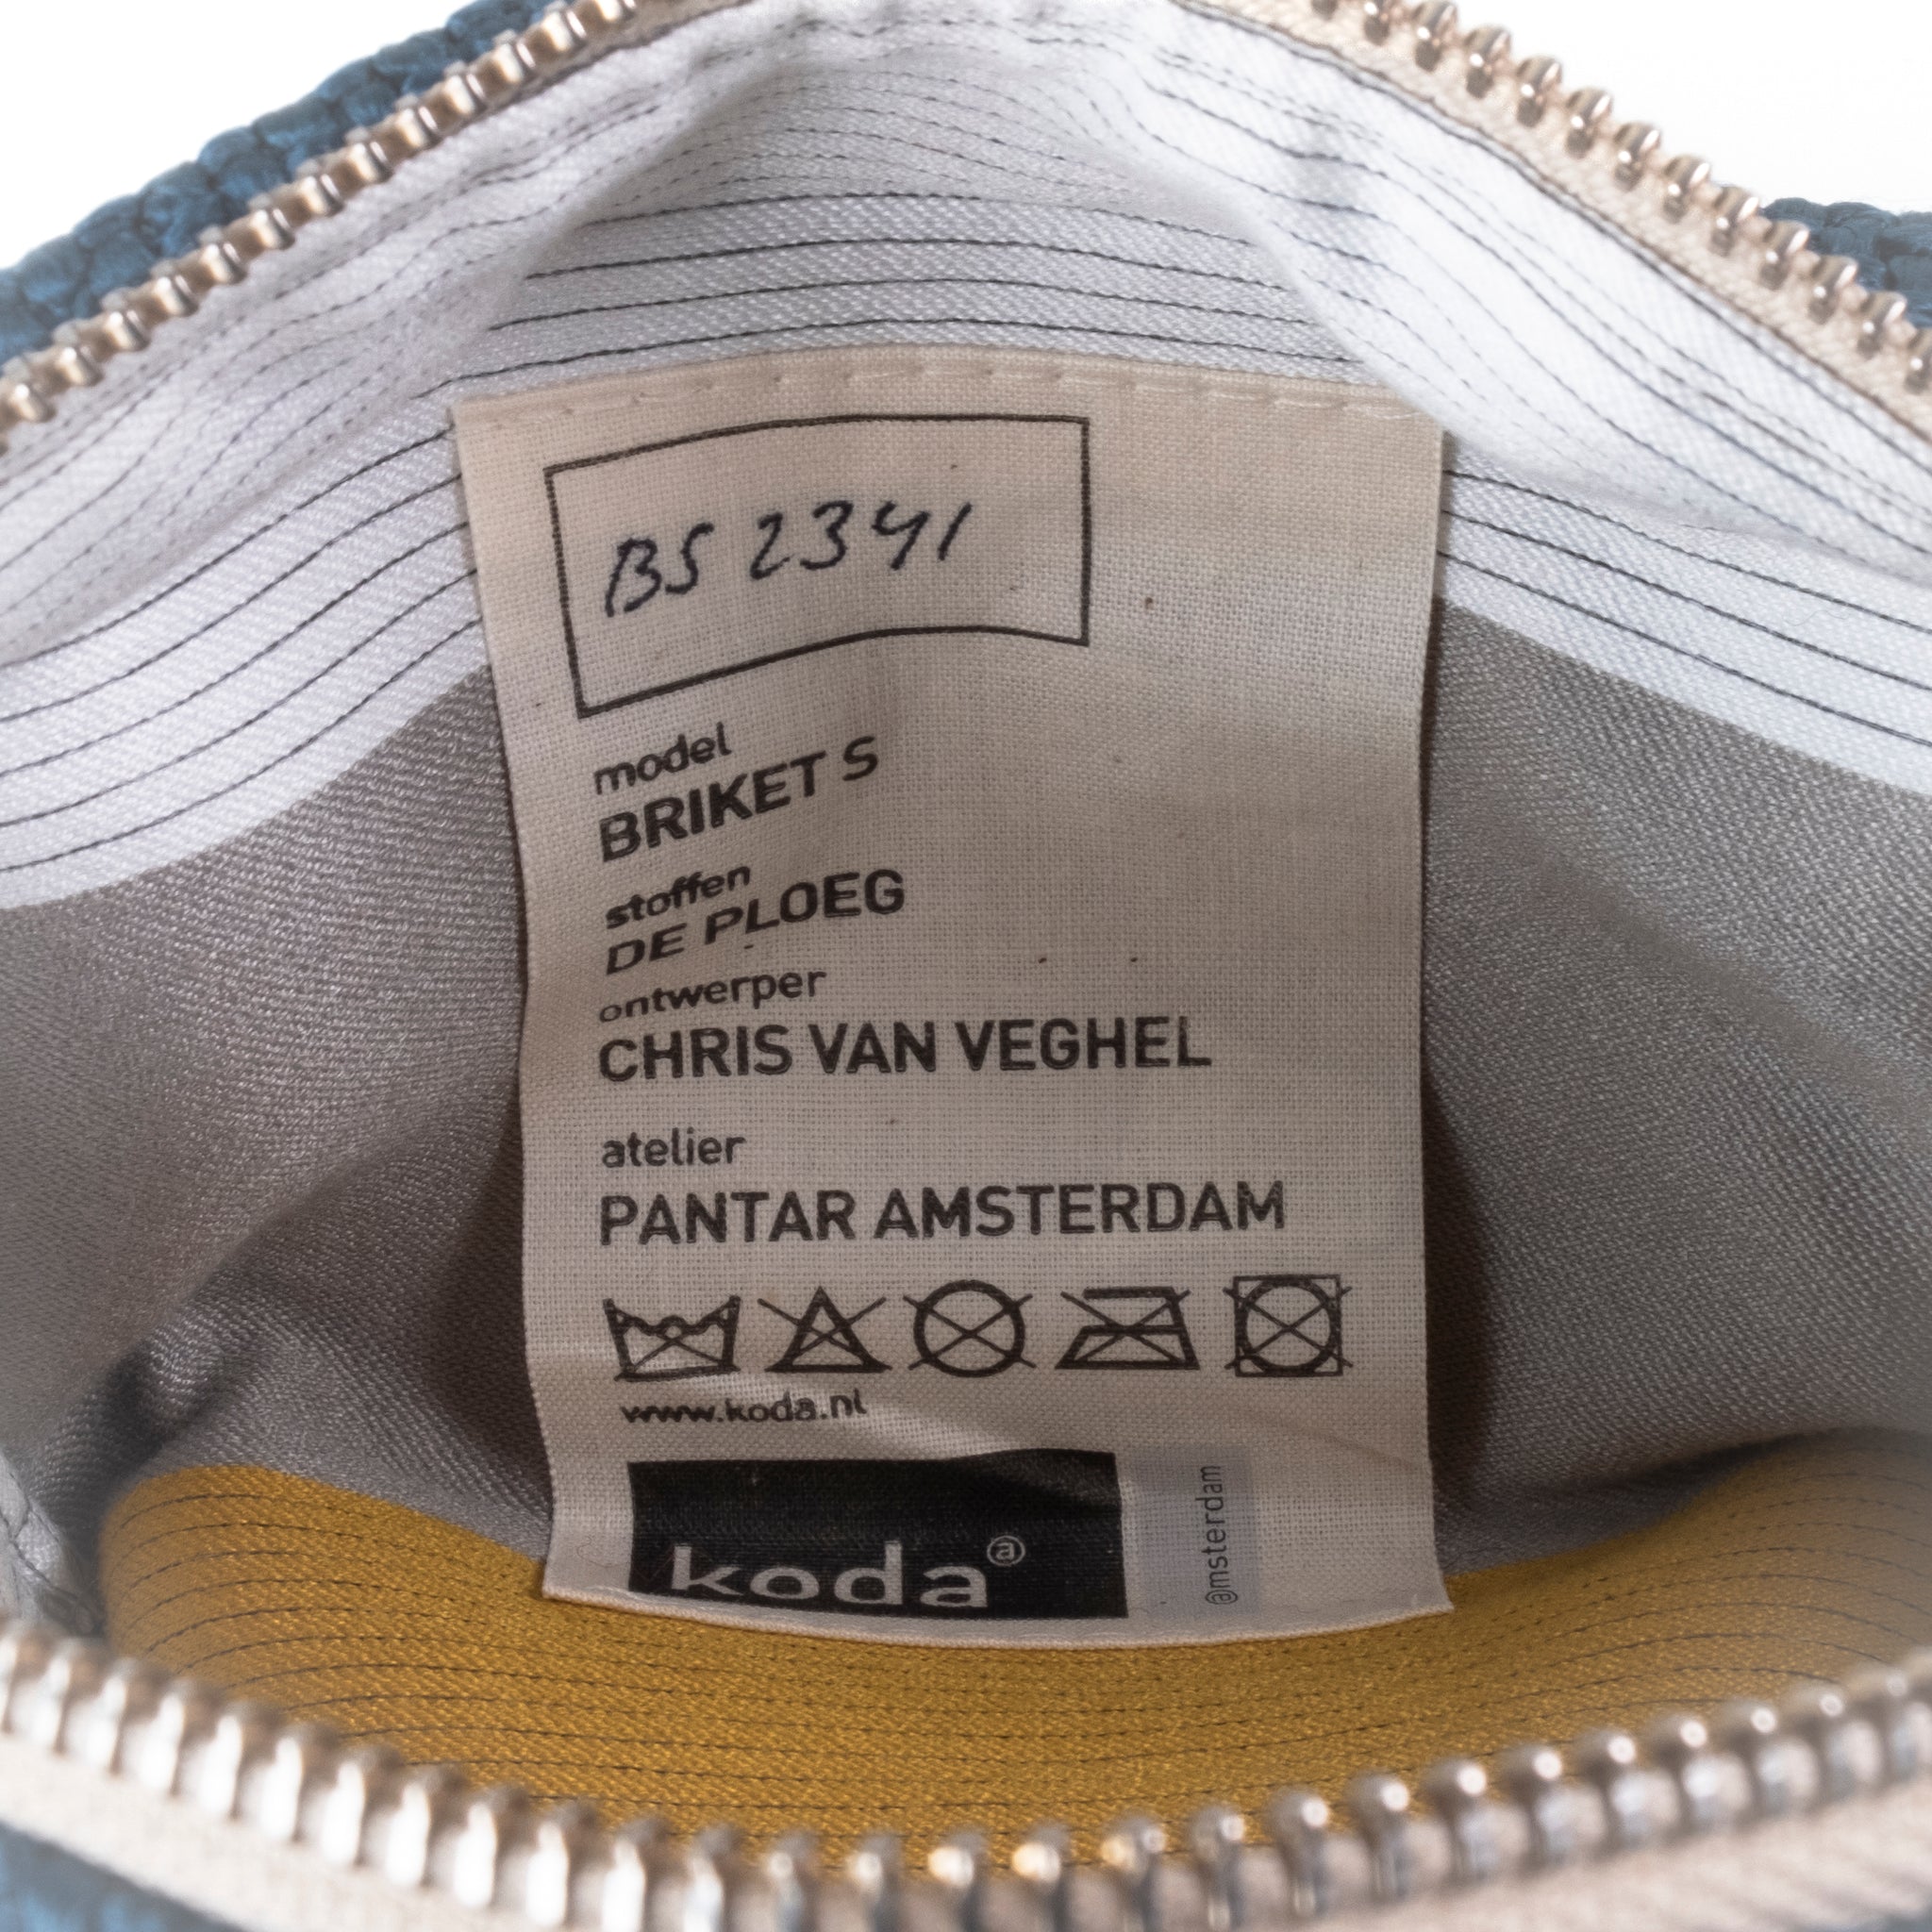 Briket is gemaakt van restmateriaal van stoffenfabrikant de Ploeg en is ontworpen door Chris van Veghel voor Koda Amsterdam. Het wordt gemaakt in sociale werkplaatsen. Dat maakt iedere Briket uniek! Te gebruiken als bv make-up tas, toilettas of pennenmap.